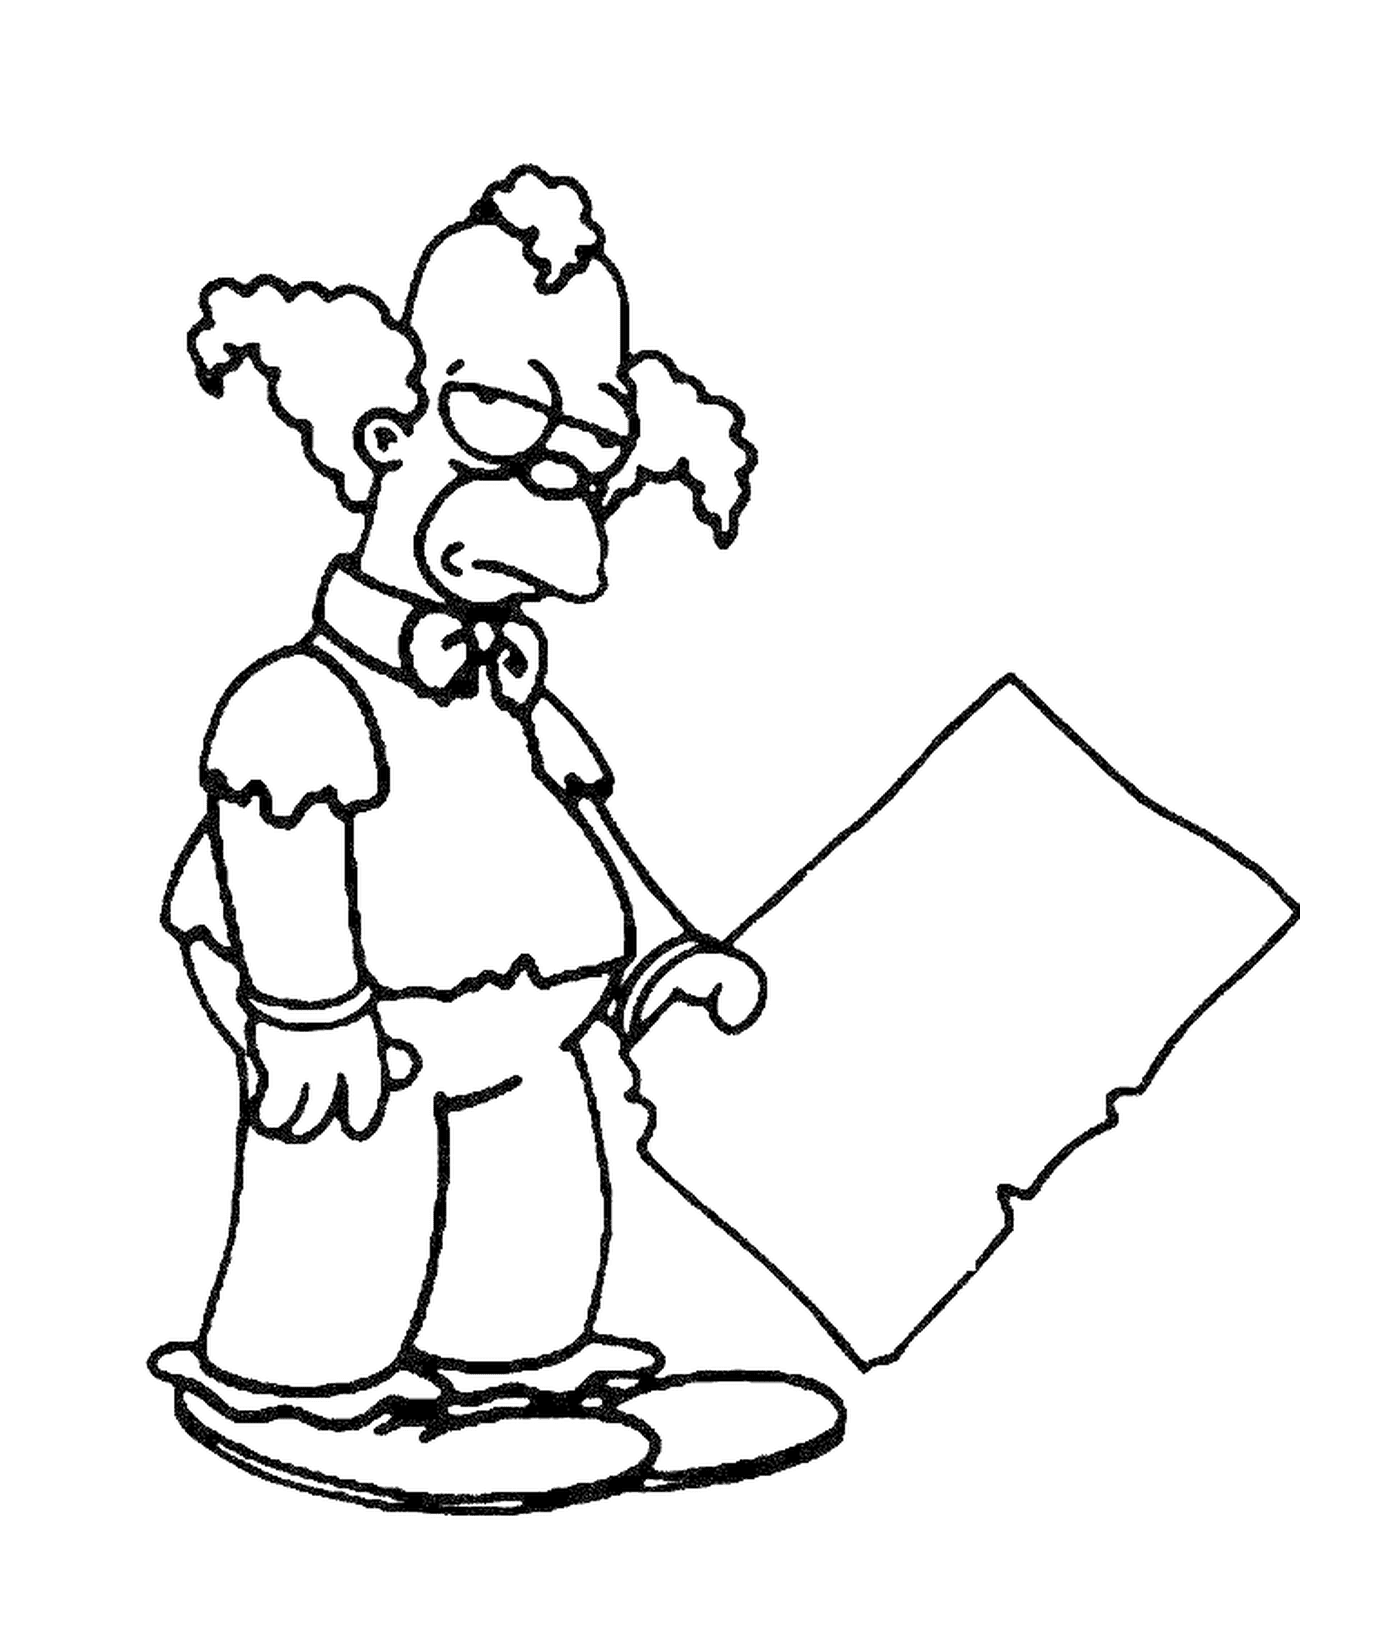  Krusty el payaso decepcionado, nadie sosteniendo una señal 